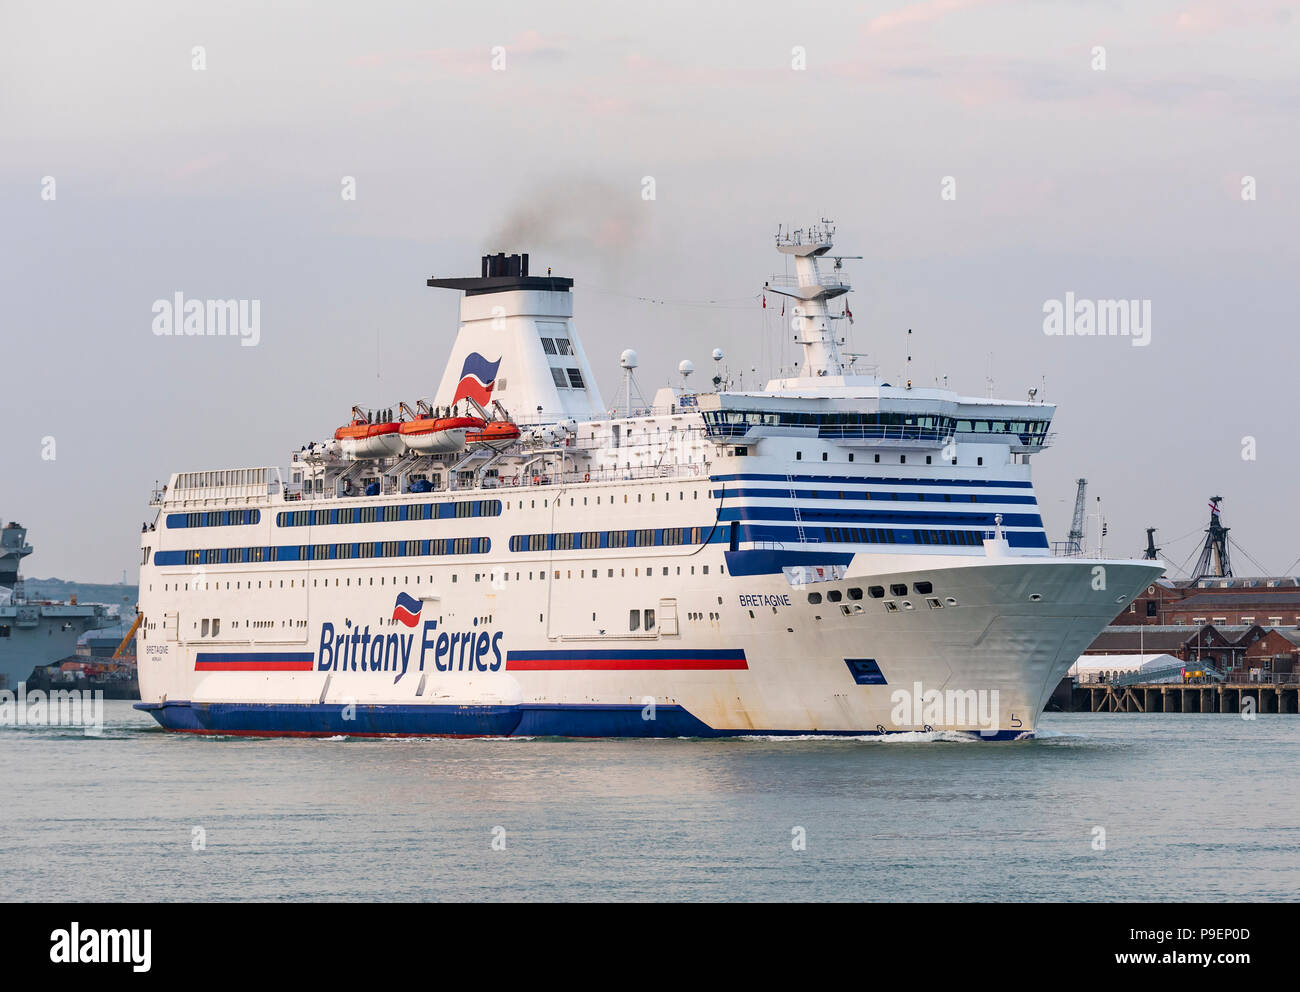 Ajouter de nouveaux tags Bretagne navire Brittany Ferries voyage hors du port de Portsmouth vers le Solent Détroit en Portsmouth, Hampshire, England, UK. Banque D'Images